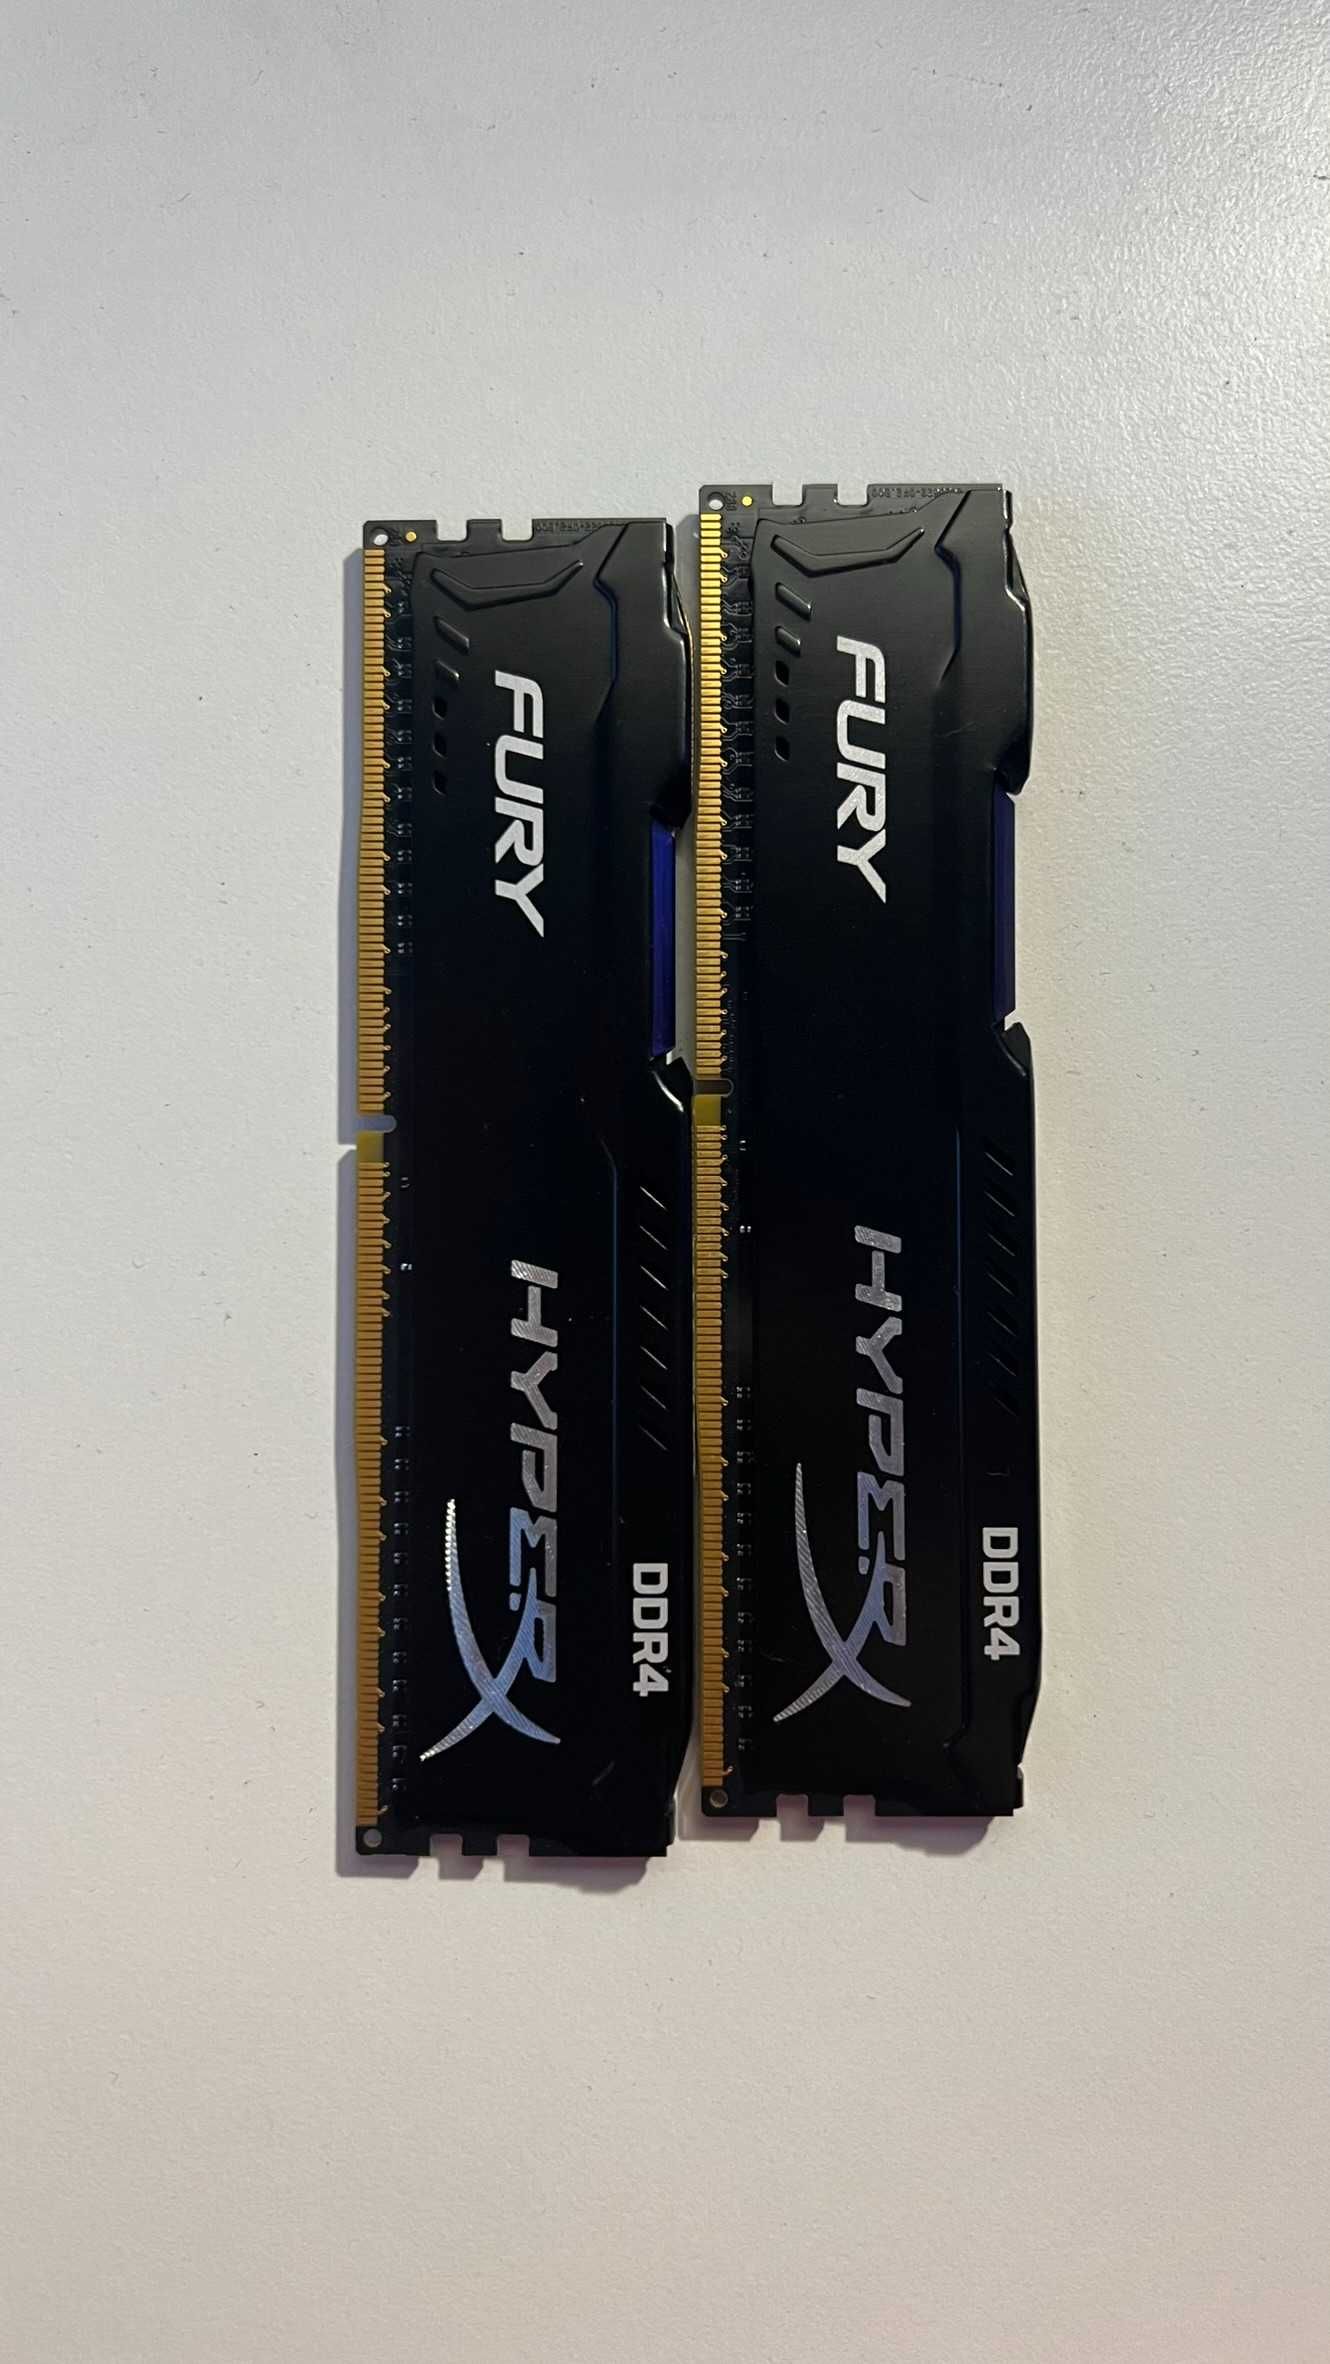 RAM HyperX Fury DDR4 16GB 2133MHz CL14 HX421C14FB2K2/16 GW